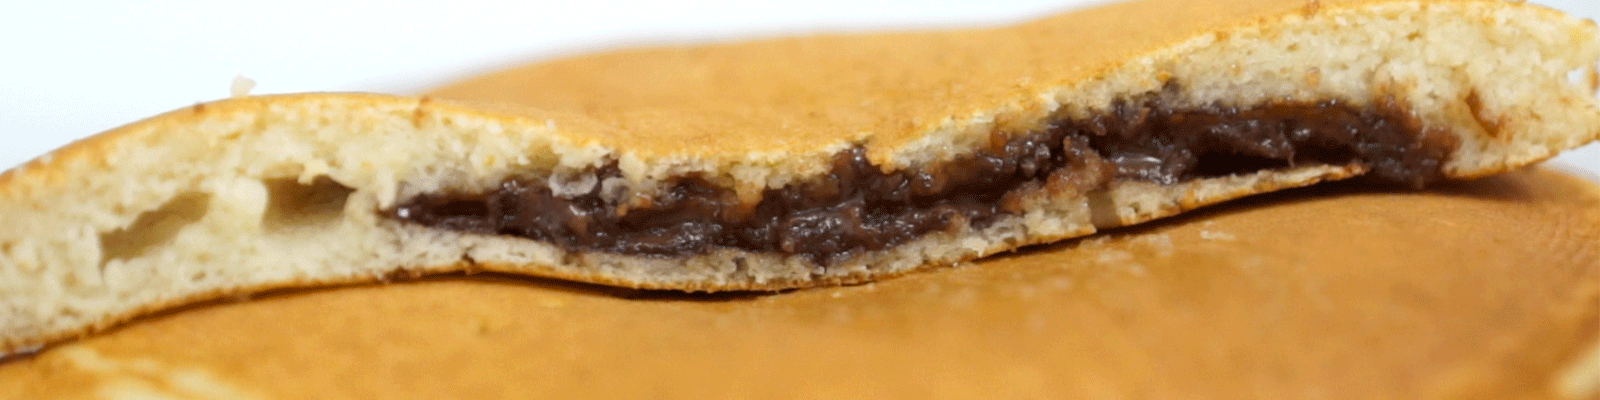 Vídeo Receta Choco Pancakes